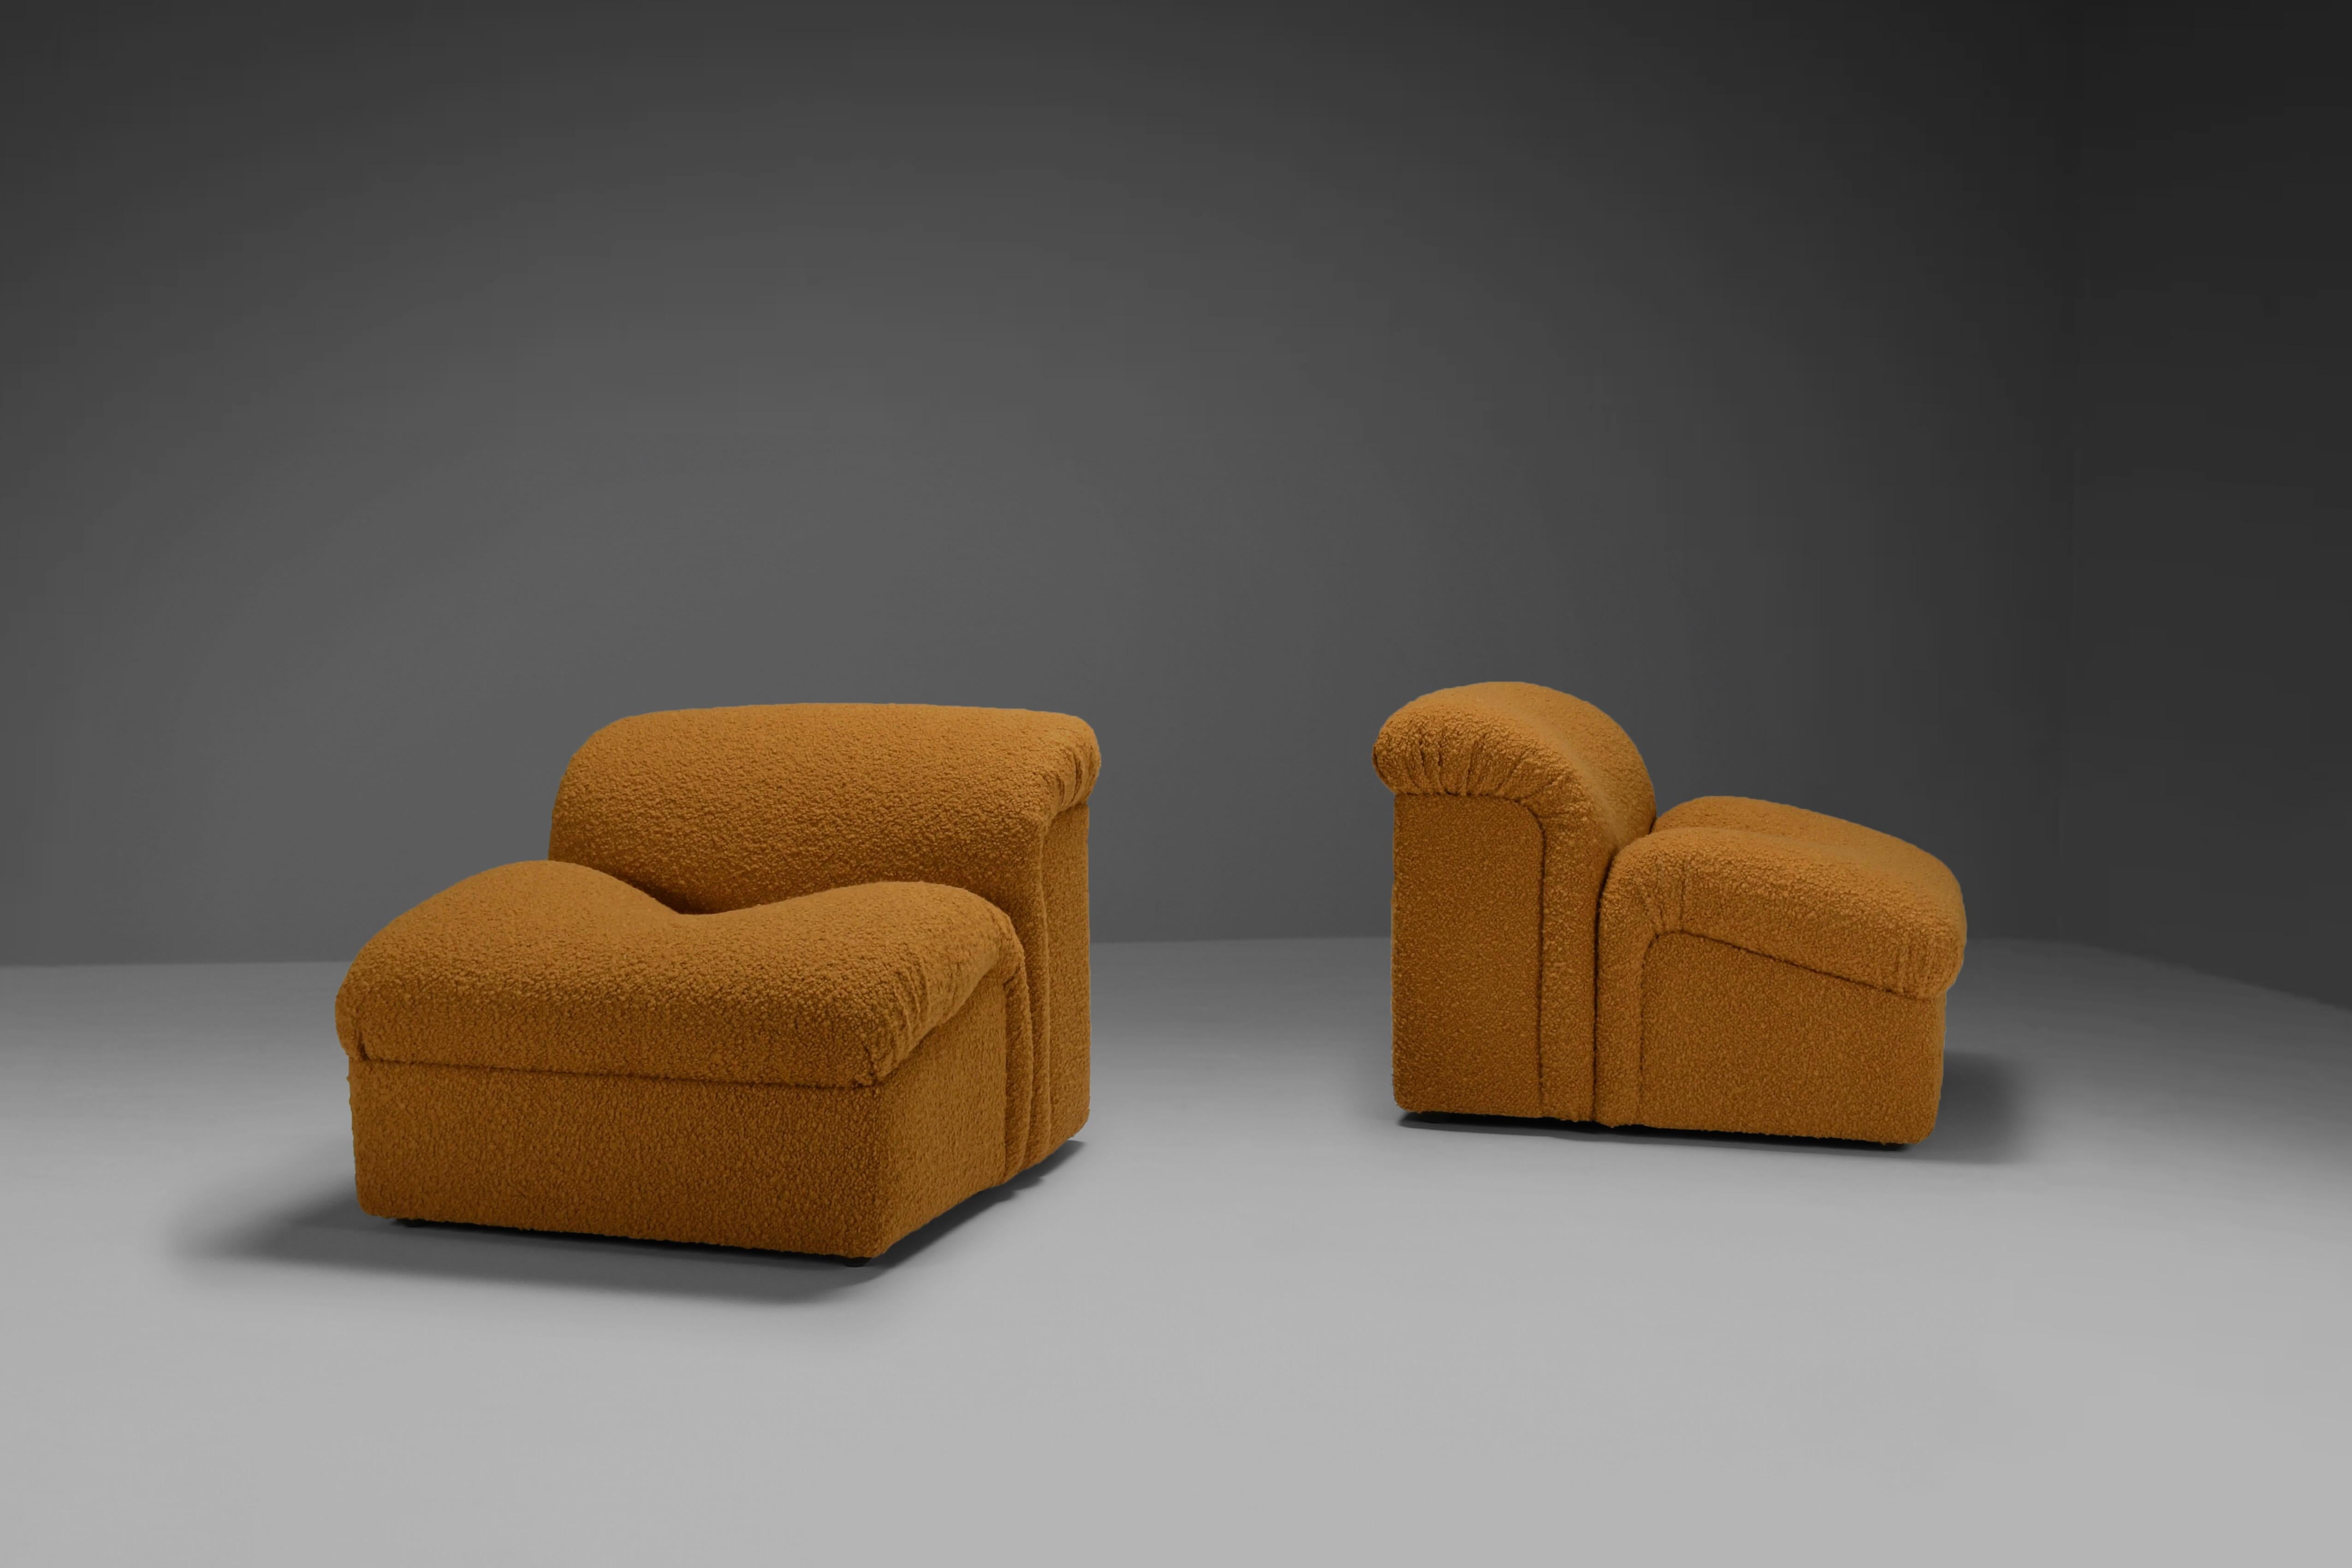 Ensemble de deux chaises 'Onda' en excellent état.

Ces chaises ont été fabriquées dans les années 1970 par Metalarte.

Ils ont une forme incurvée très intéressante et semblent être constitués de deux parties distinctes qui ont été assemblées. Ils